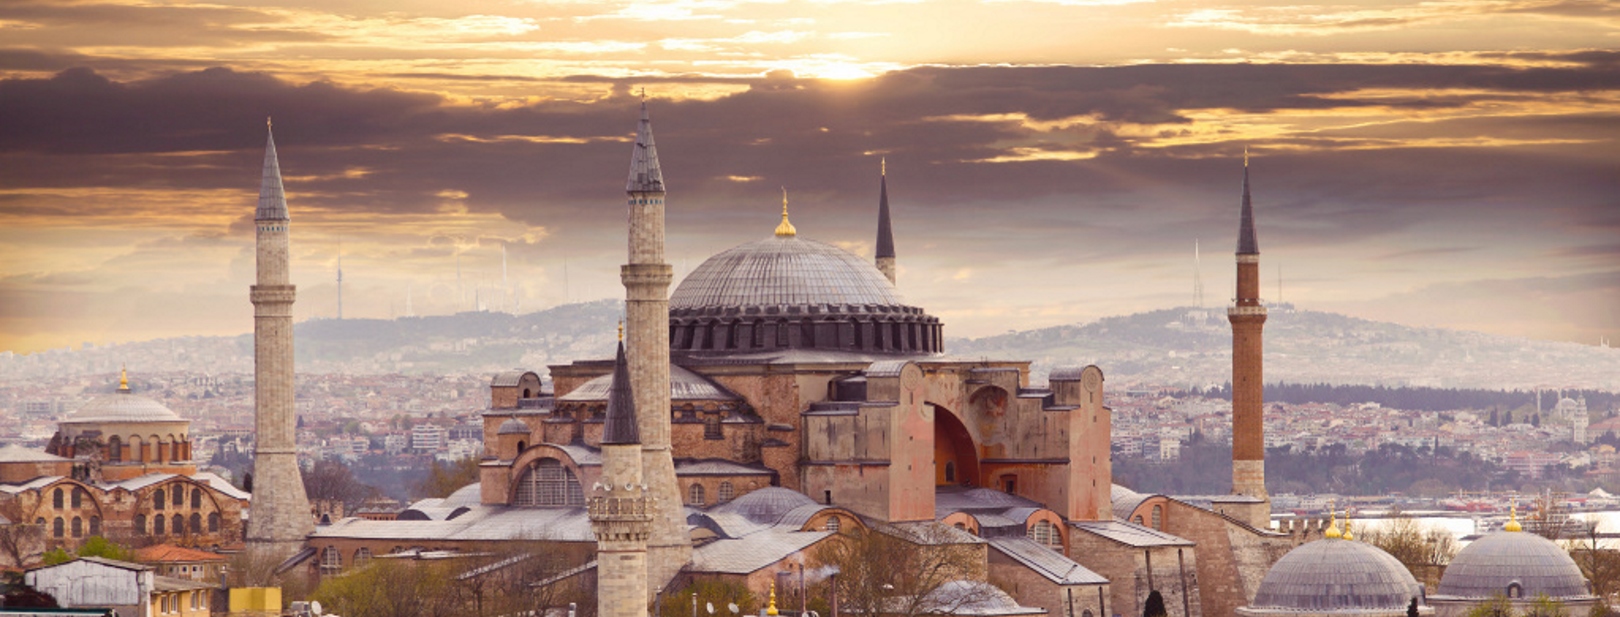 Turquie - Istanbul - Hôtel Grand Ons 3*